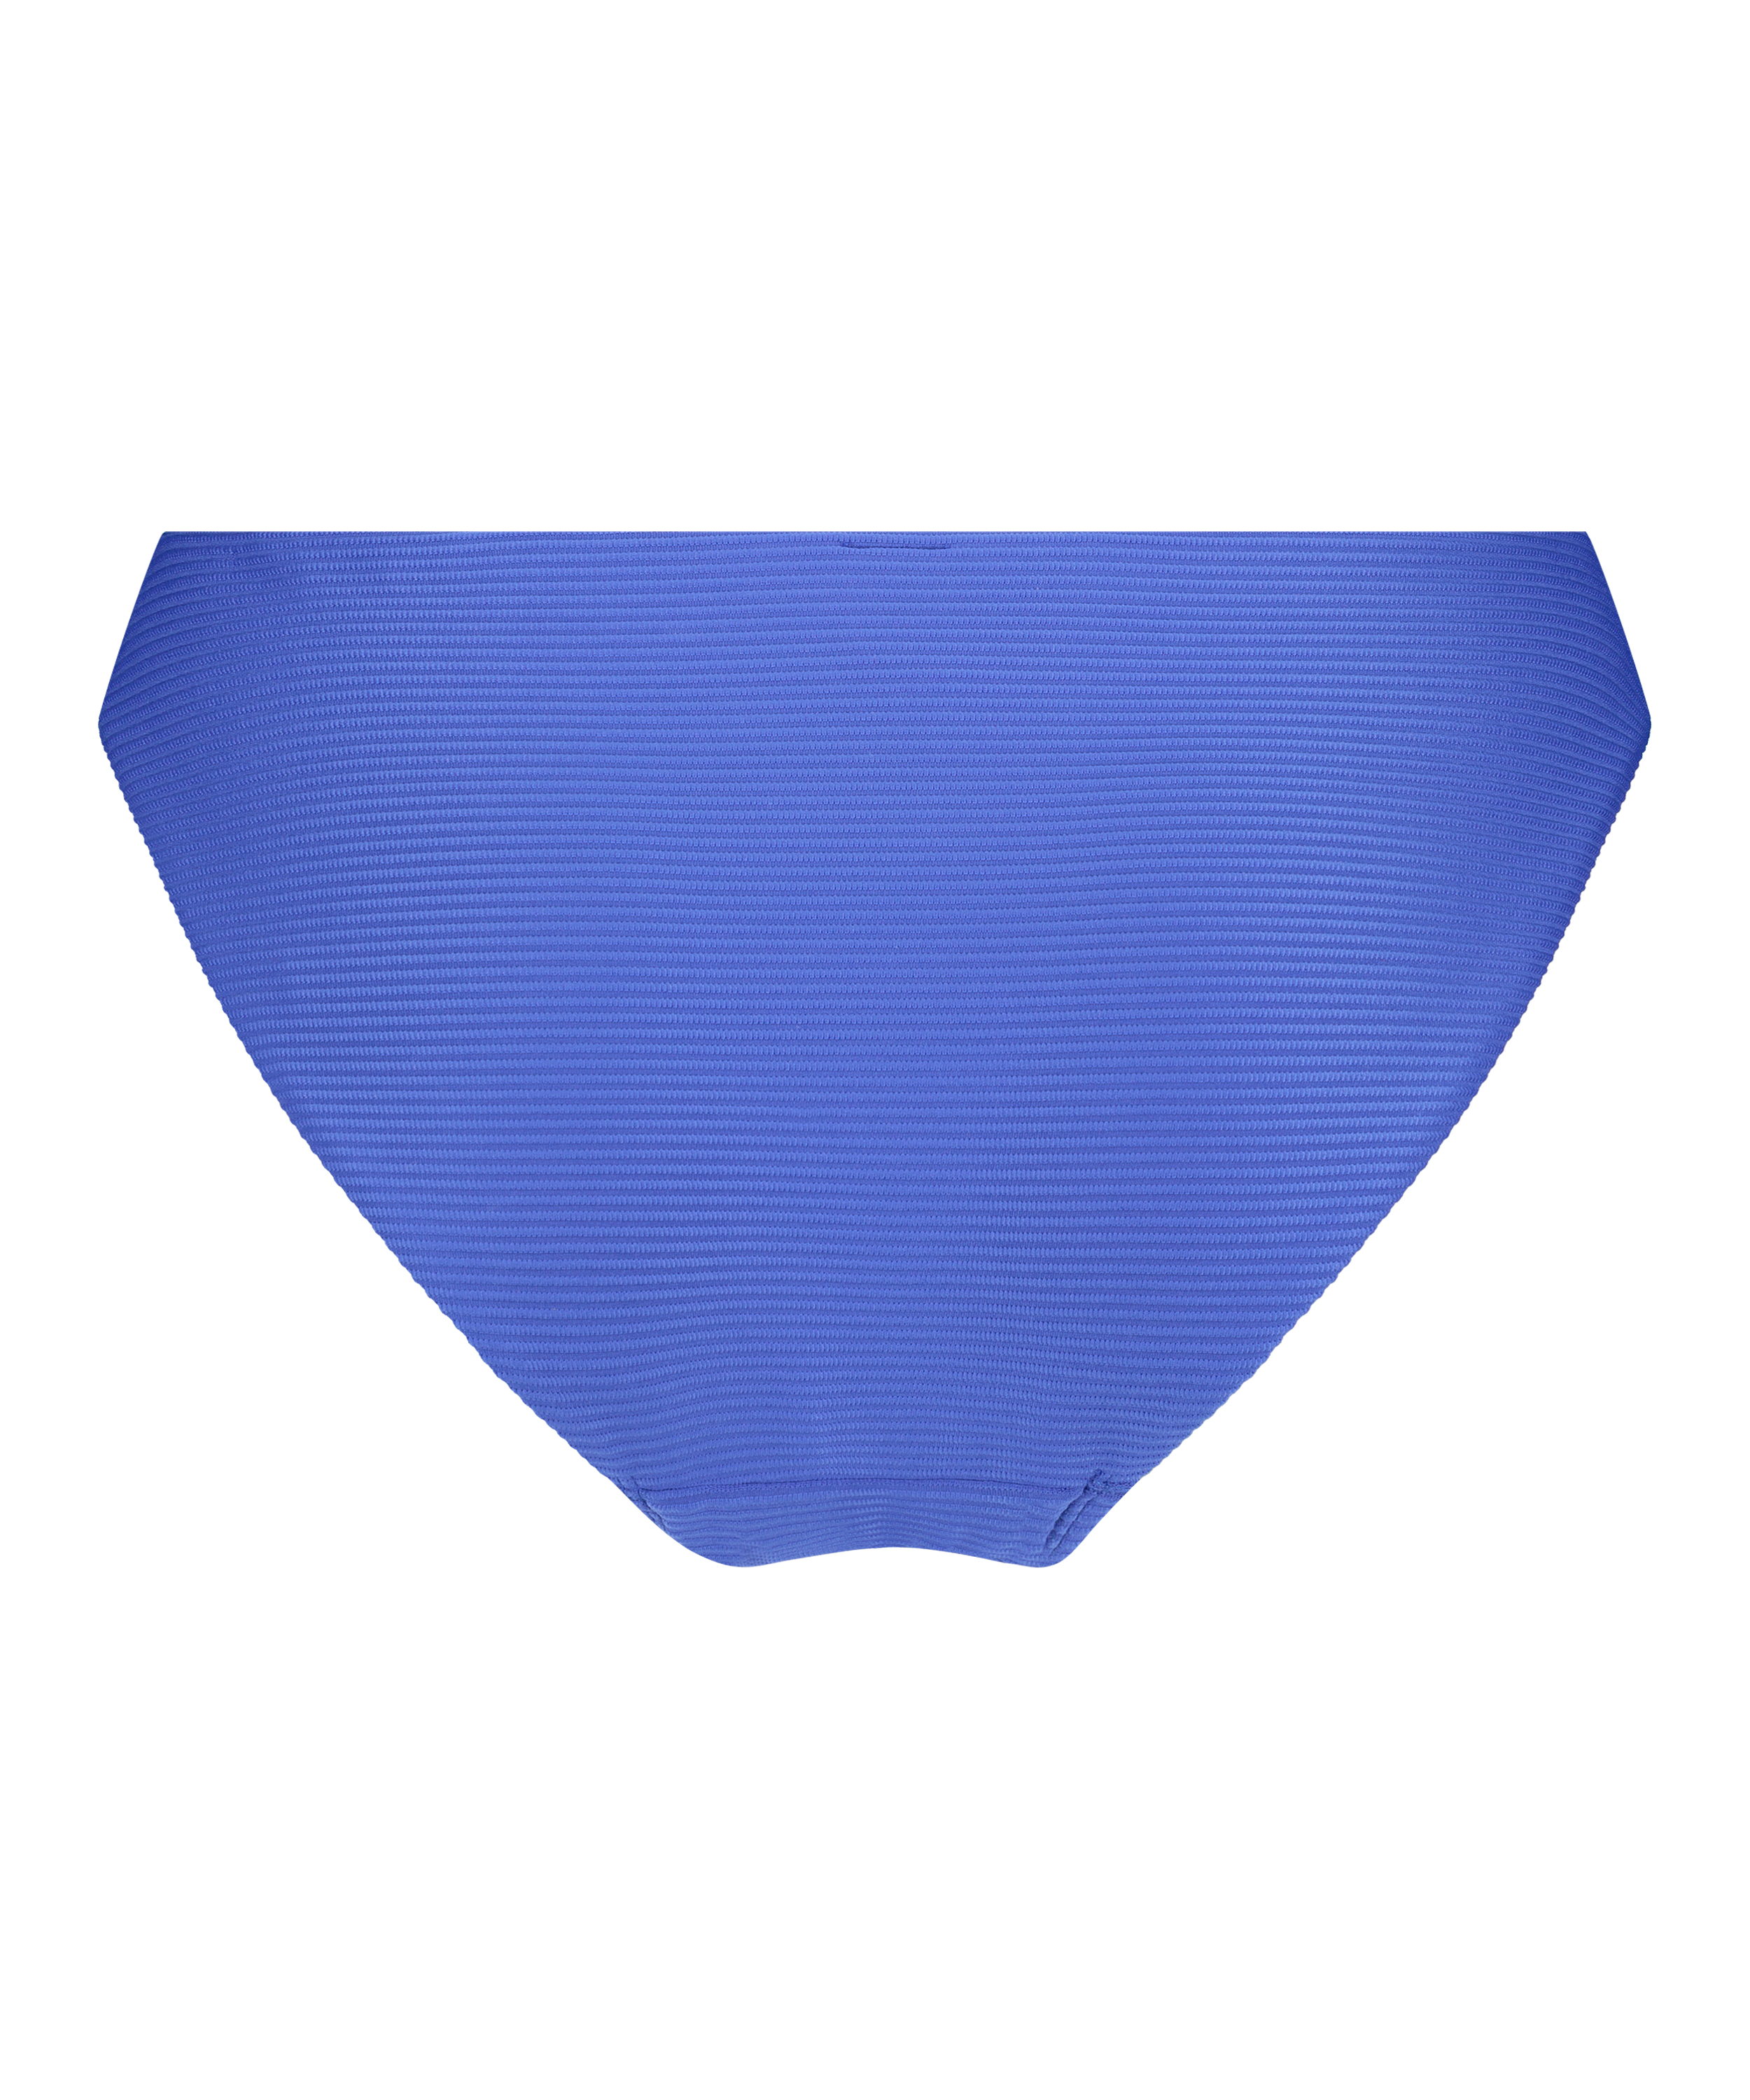 Lagoon bikini bottoms, Blue, main